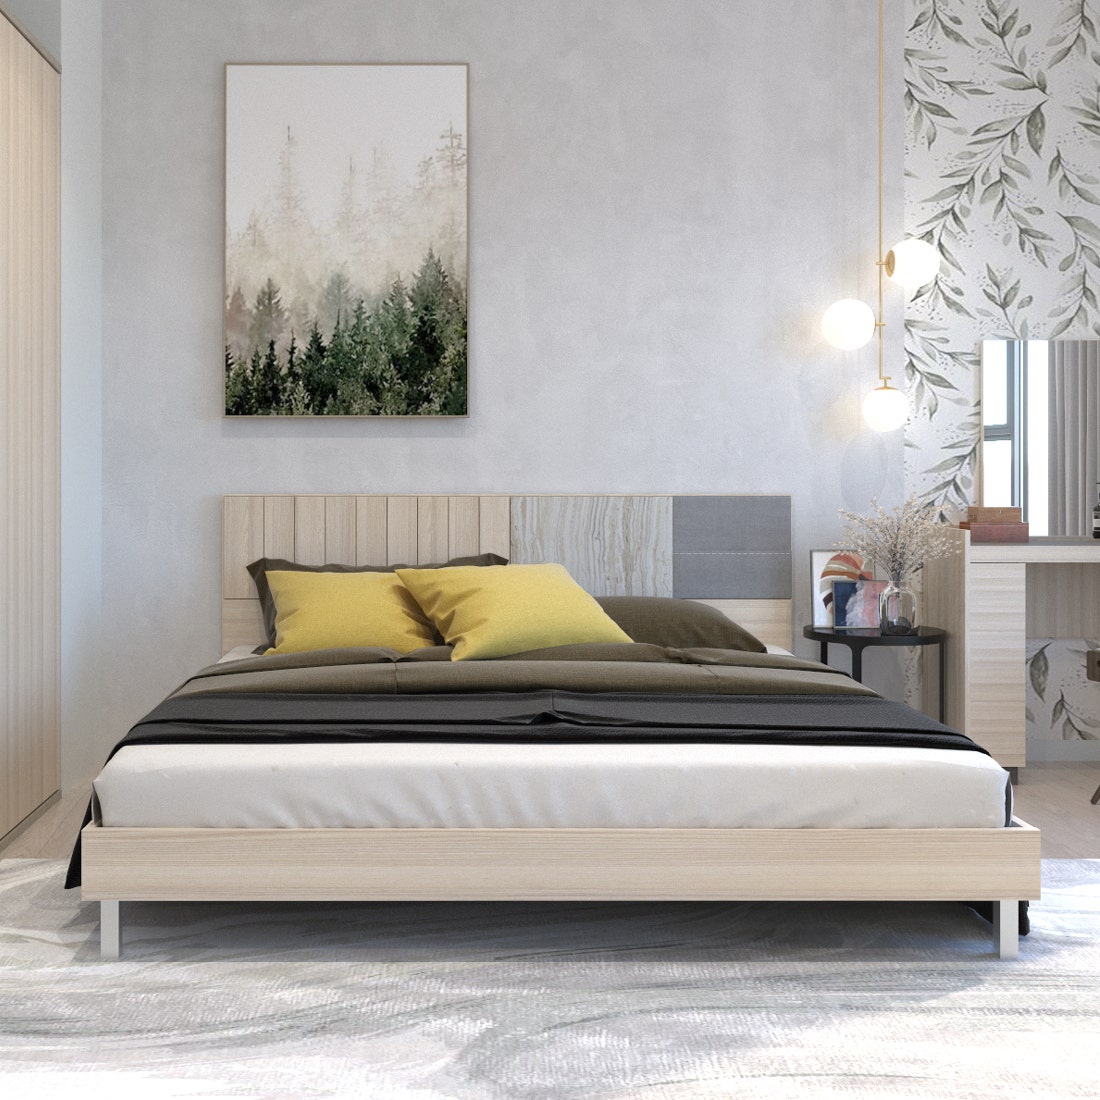 เตียงนอน 6 ฟุต รุ่น Econi-B Premium สีไม้เข้ม 03